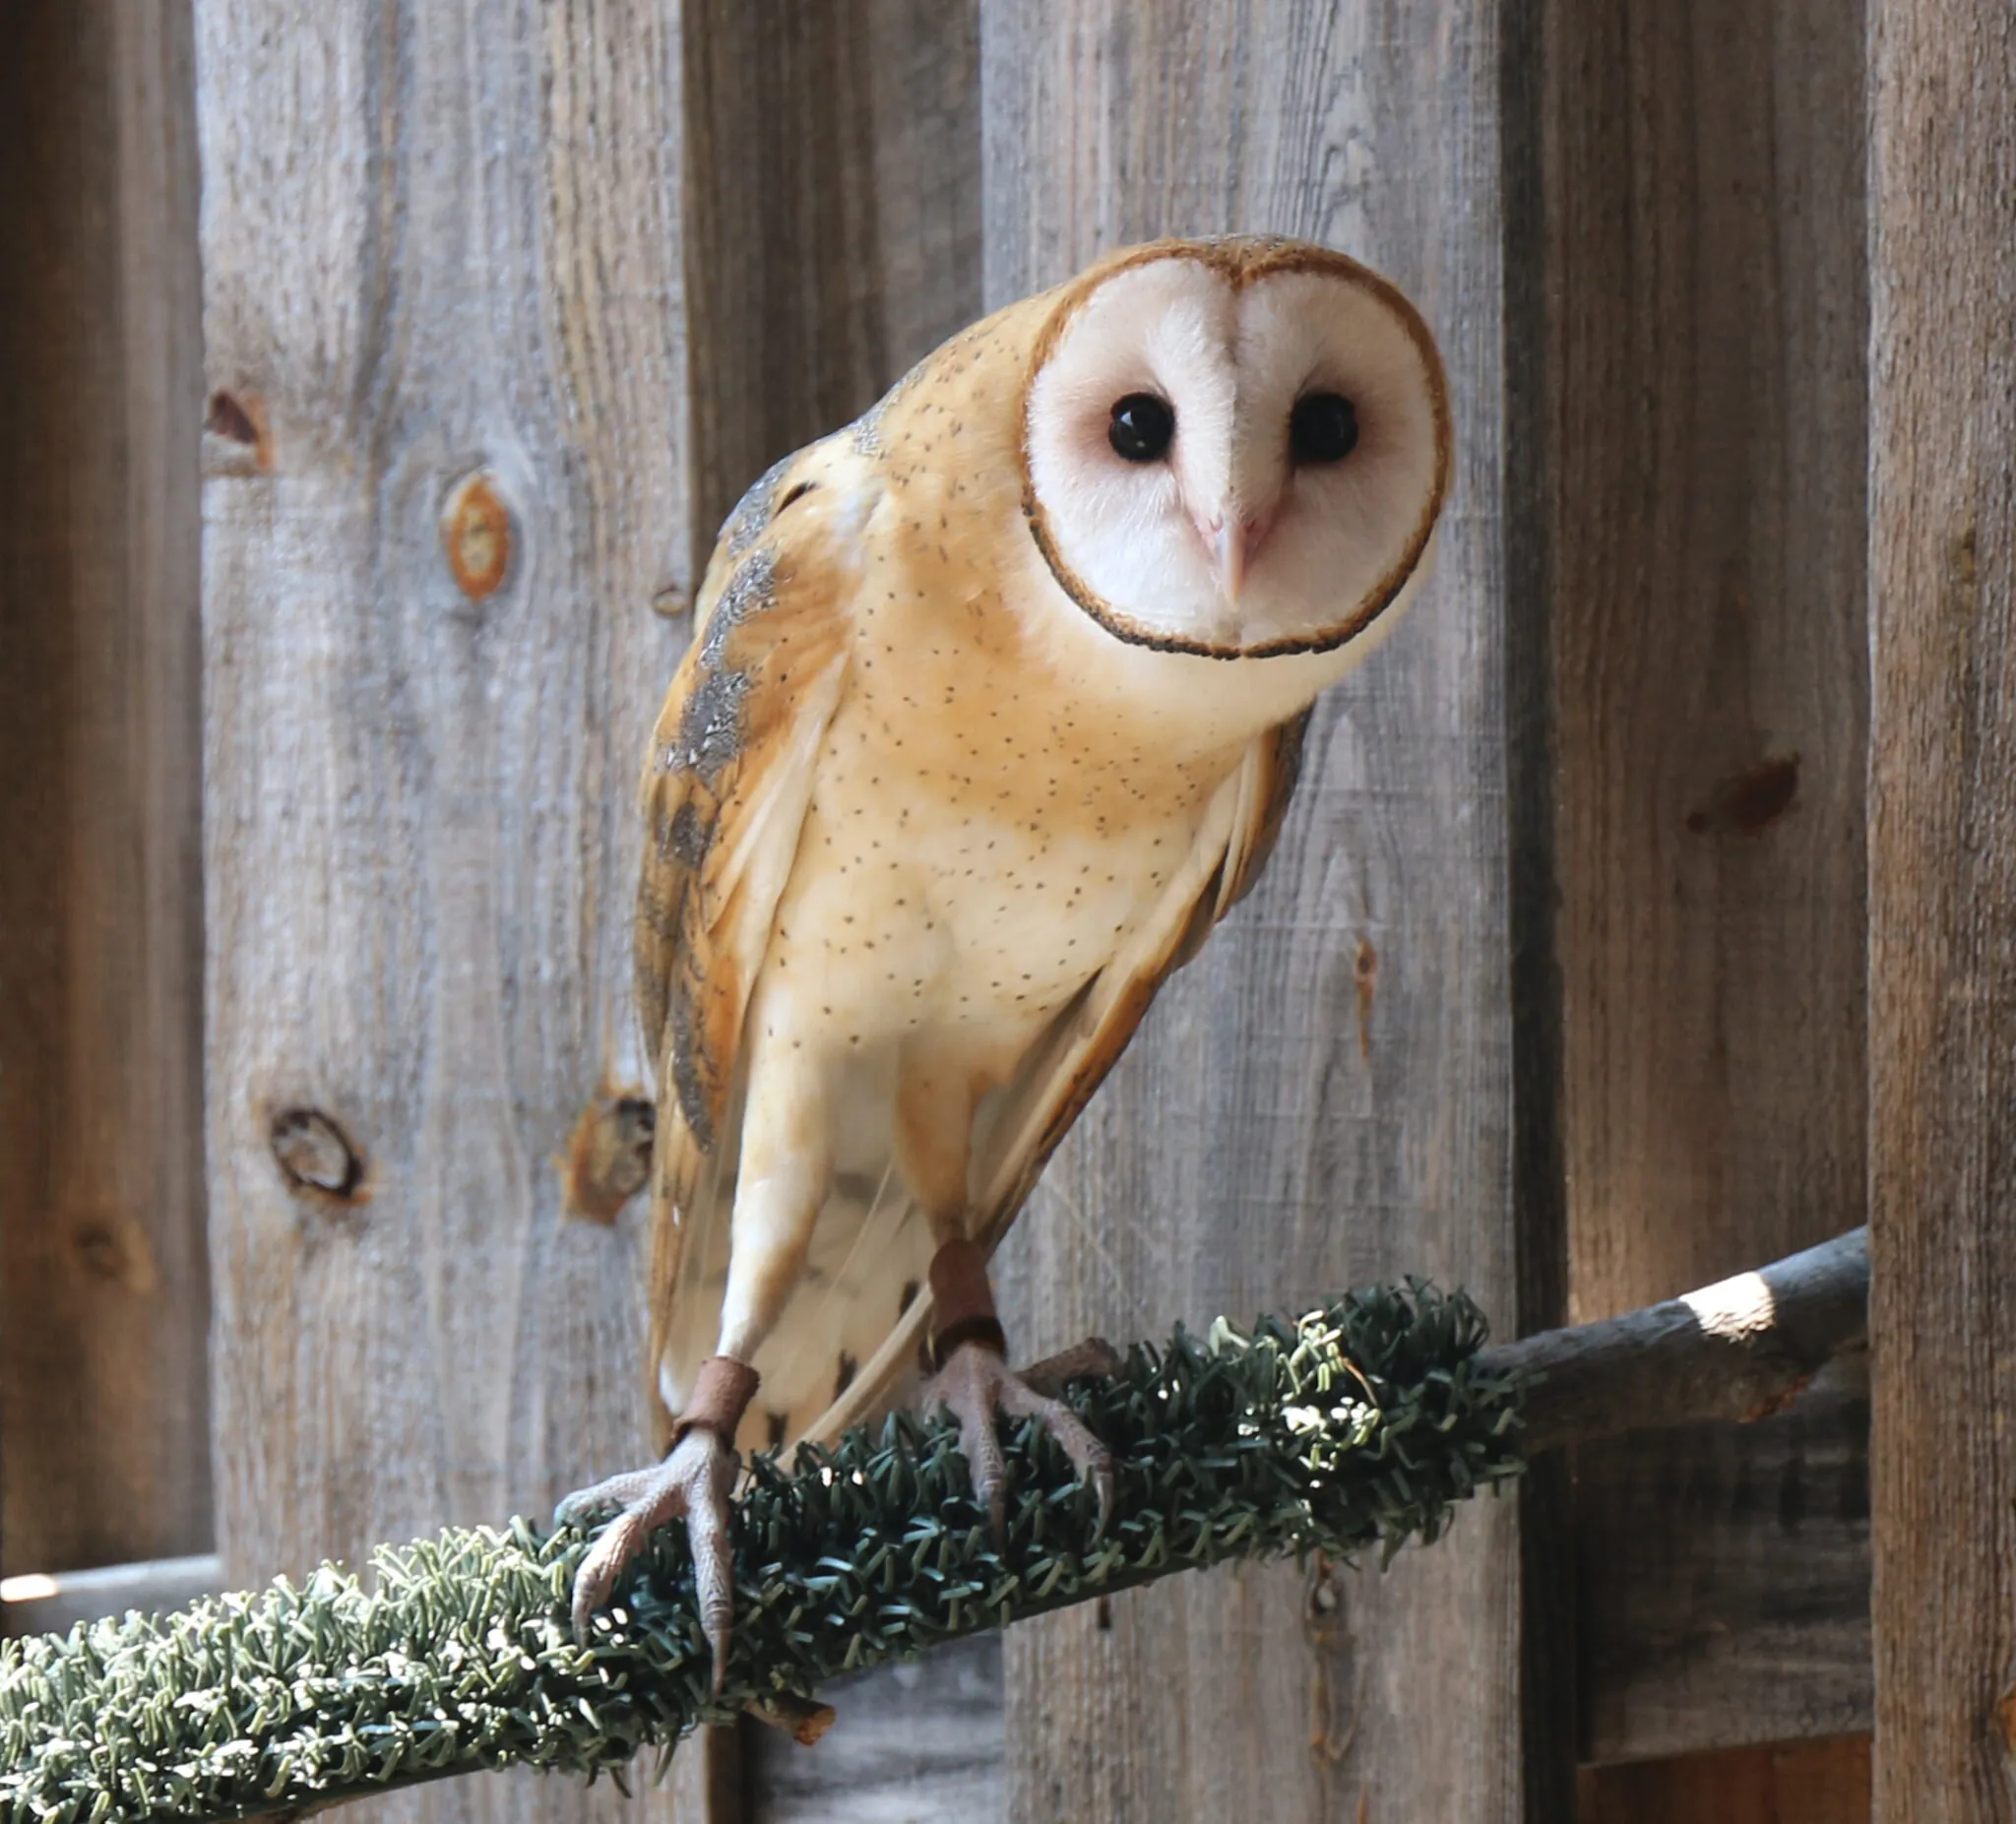 Barn owl on perch